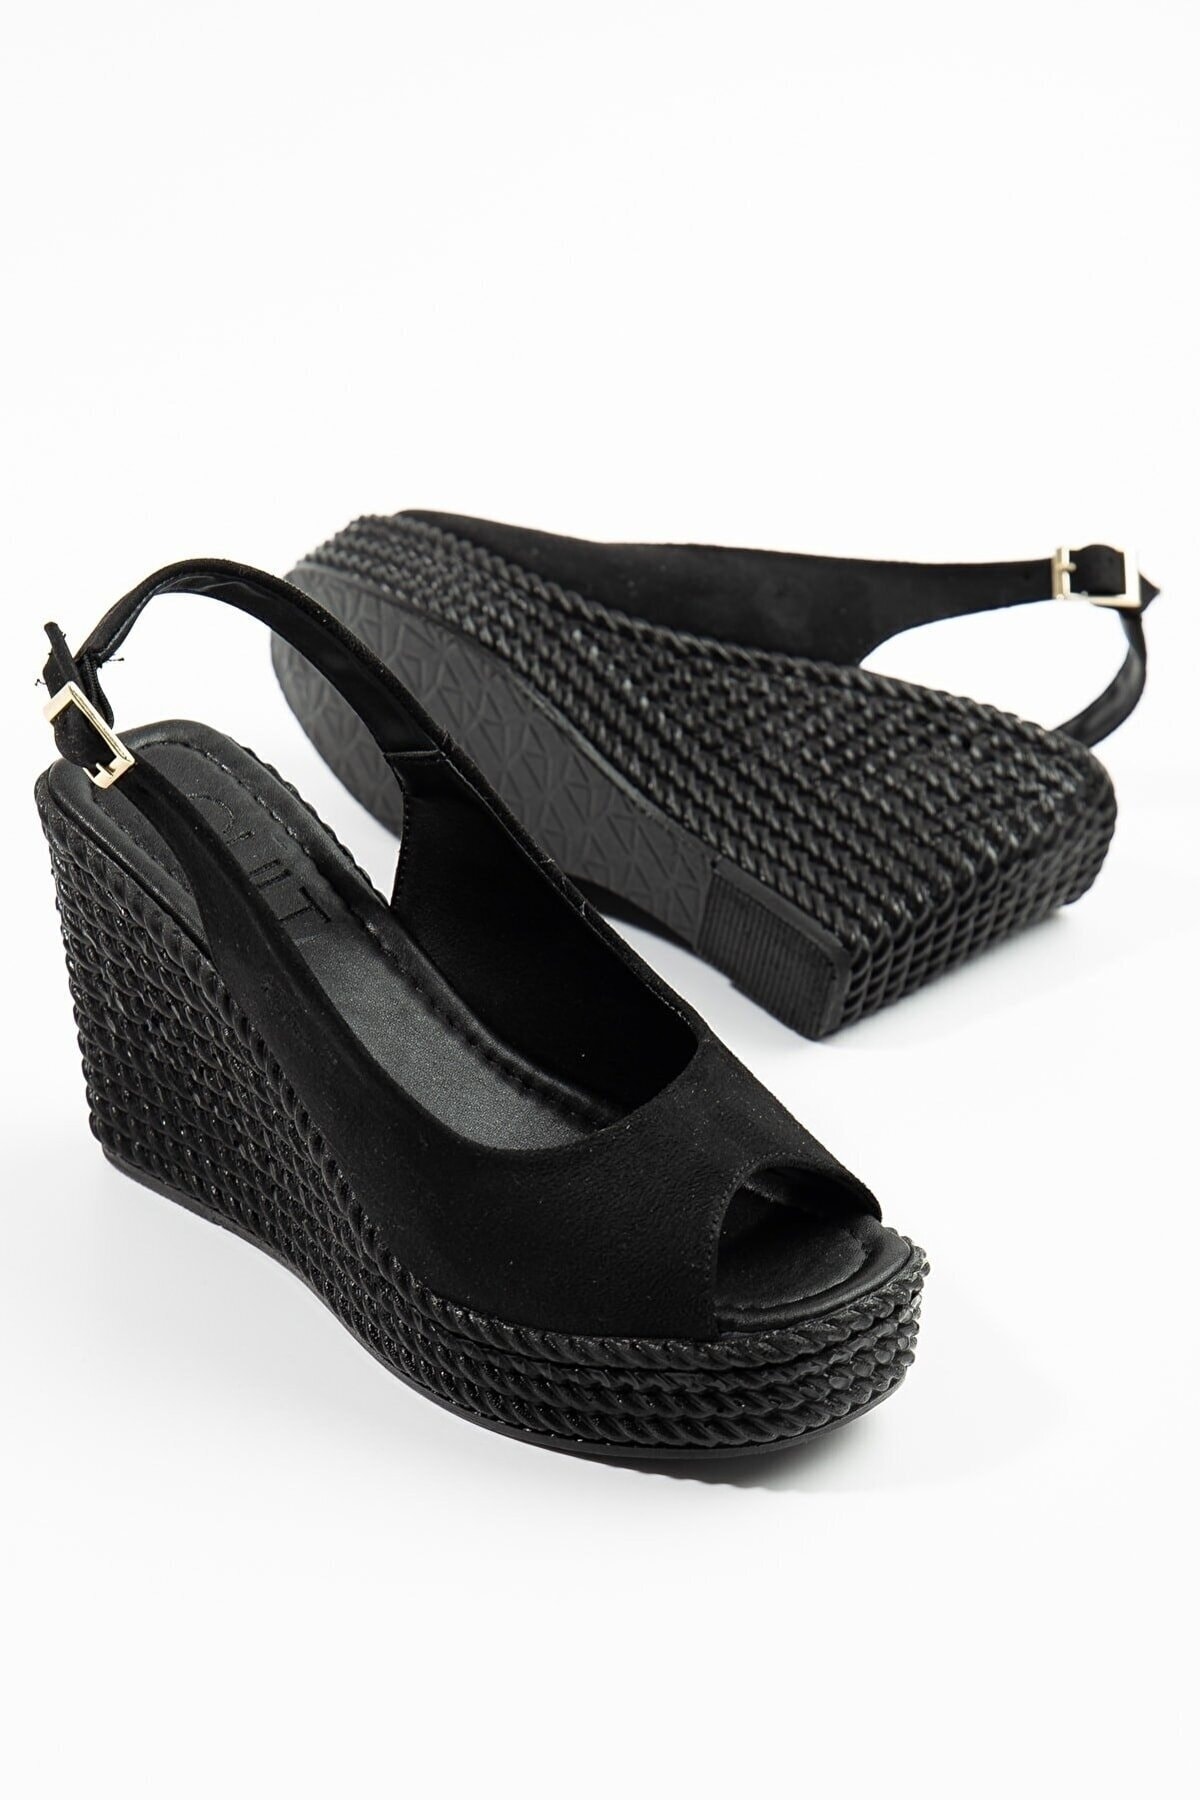 Rockcraft.tr Kadın Siyah Süet Dolgu Topuklu Klasik Sandalet - 10 Cm - Yazlık VB10012